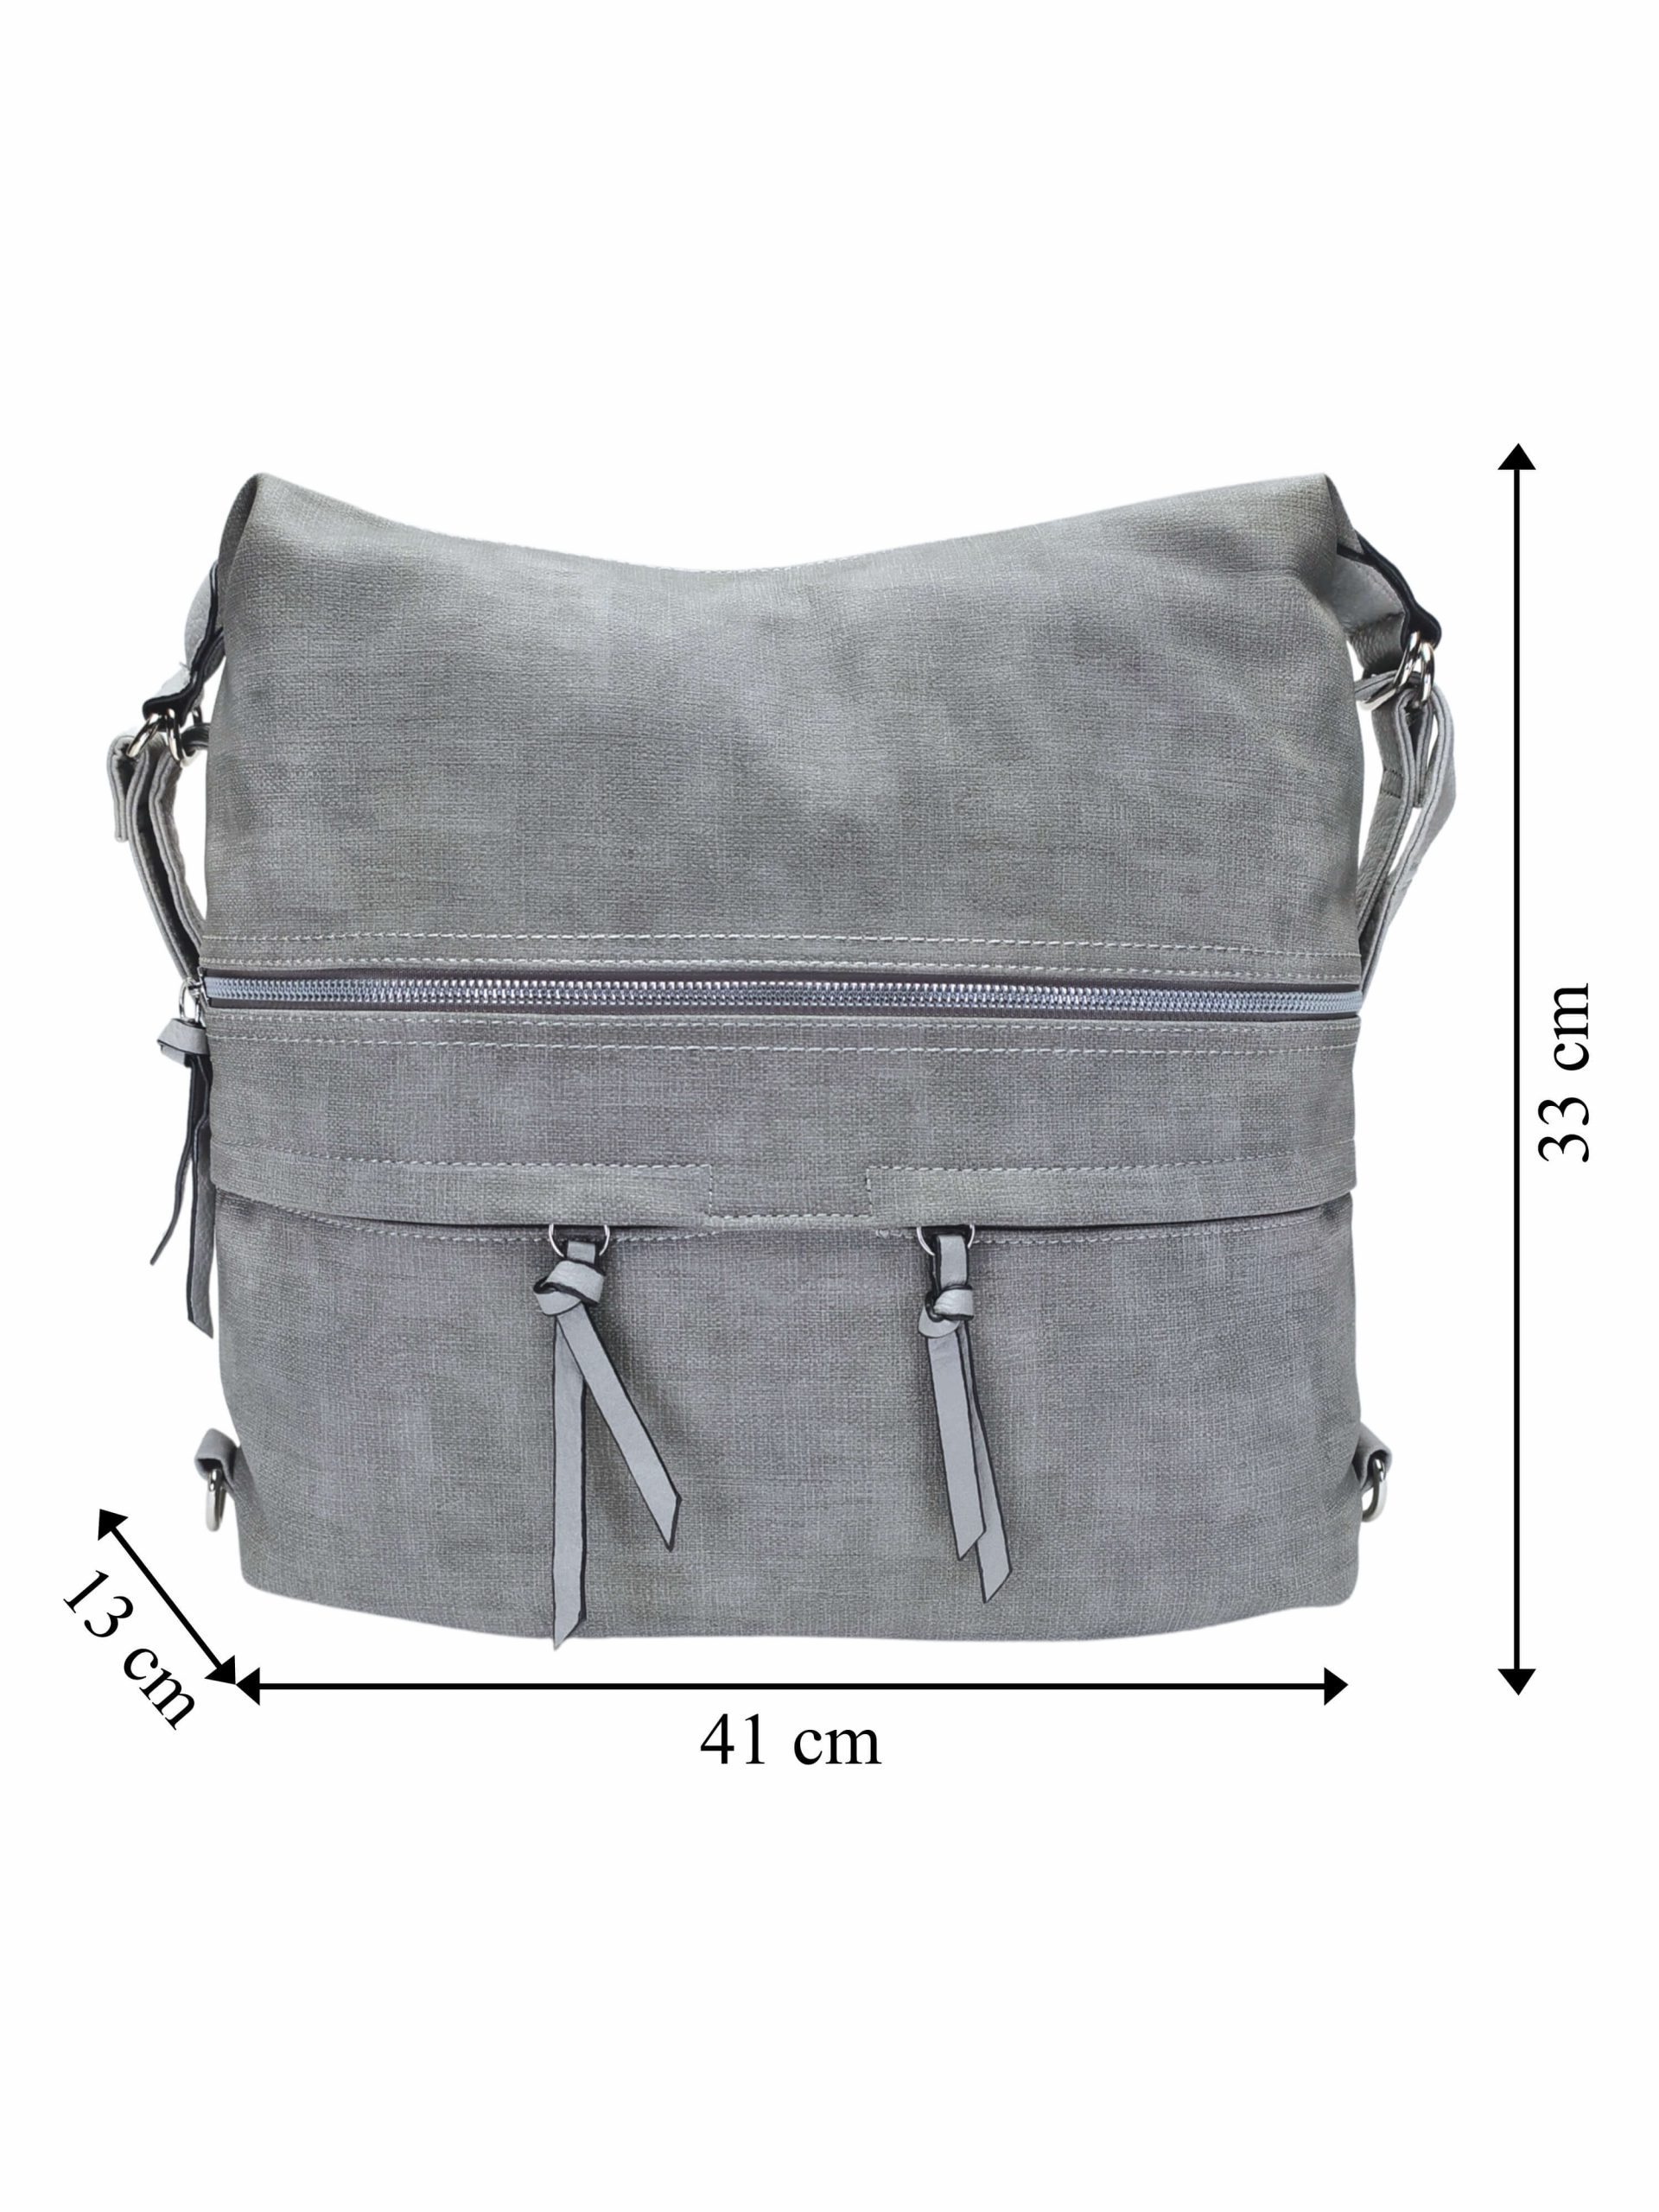 Velká světle šedá kabelka a batoh 2v1 s kapsami, Tapple, H181175N, přední strana kabelky a batohu 2v1 s rozměry